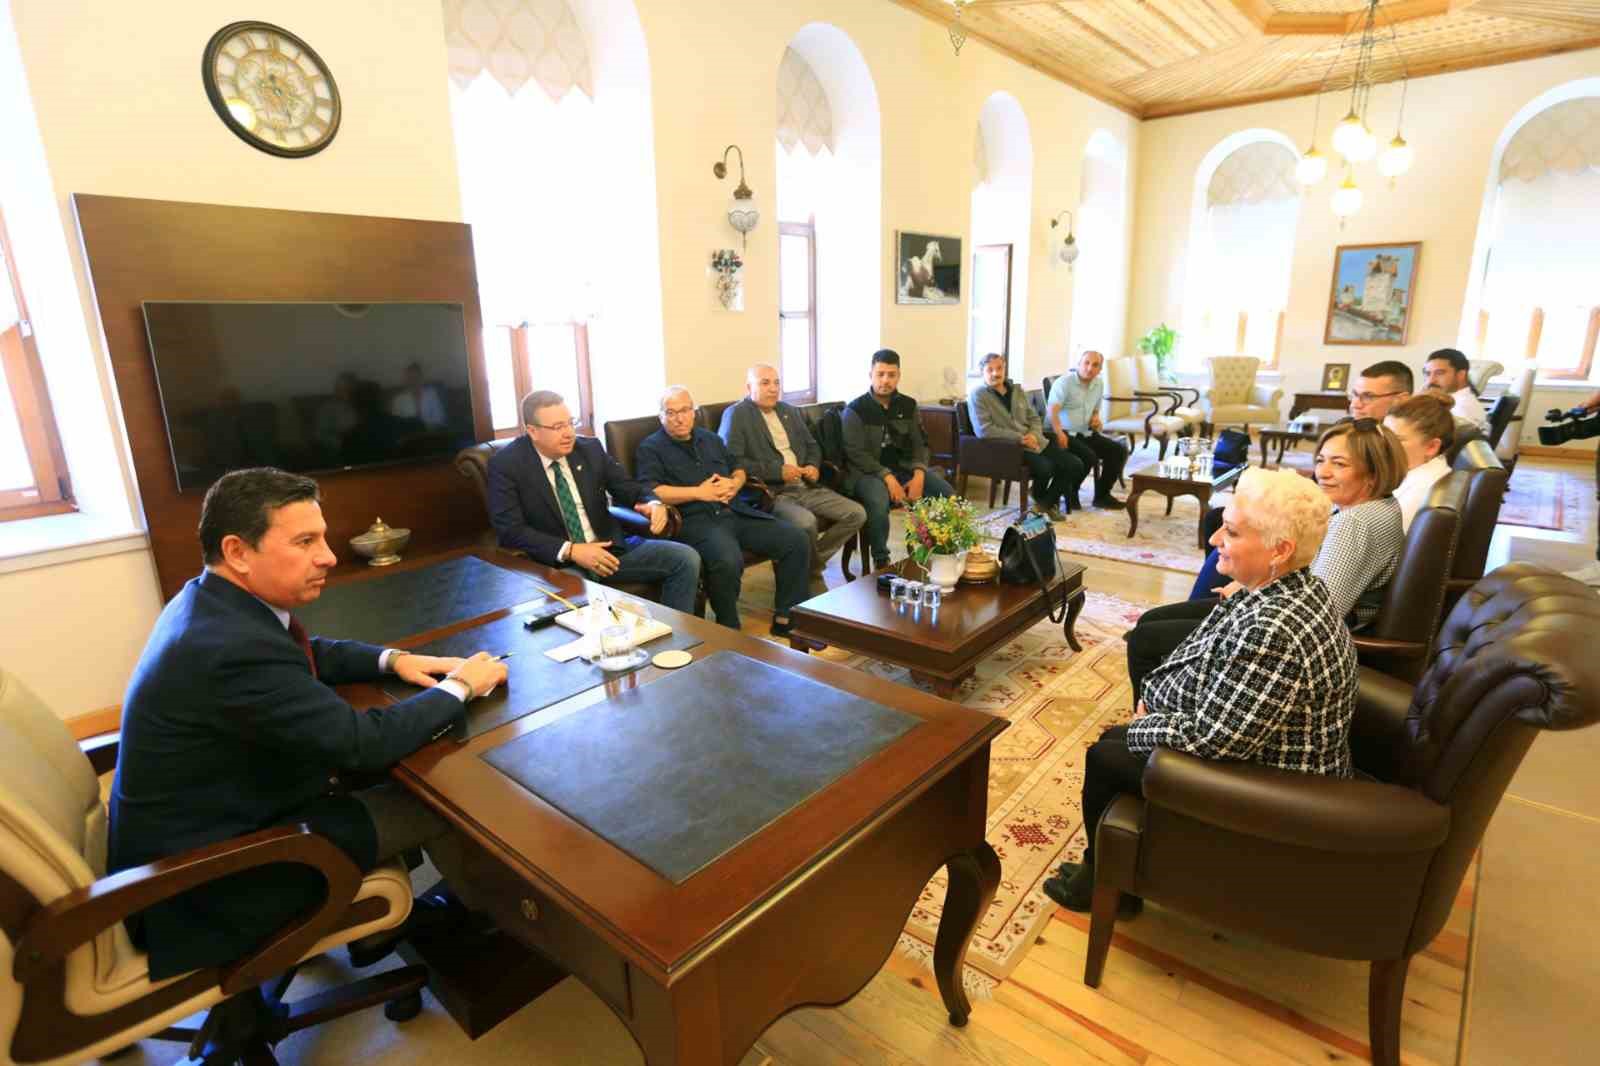 Muğla Büyükşehir Gazeteciler Derneği’nden Başkan Aras’a ‘Hayırlı olsun’ ziyareti
